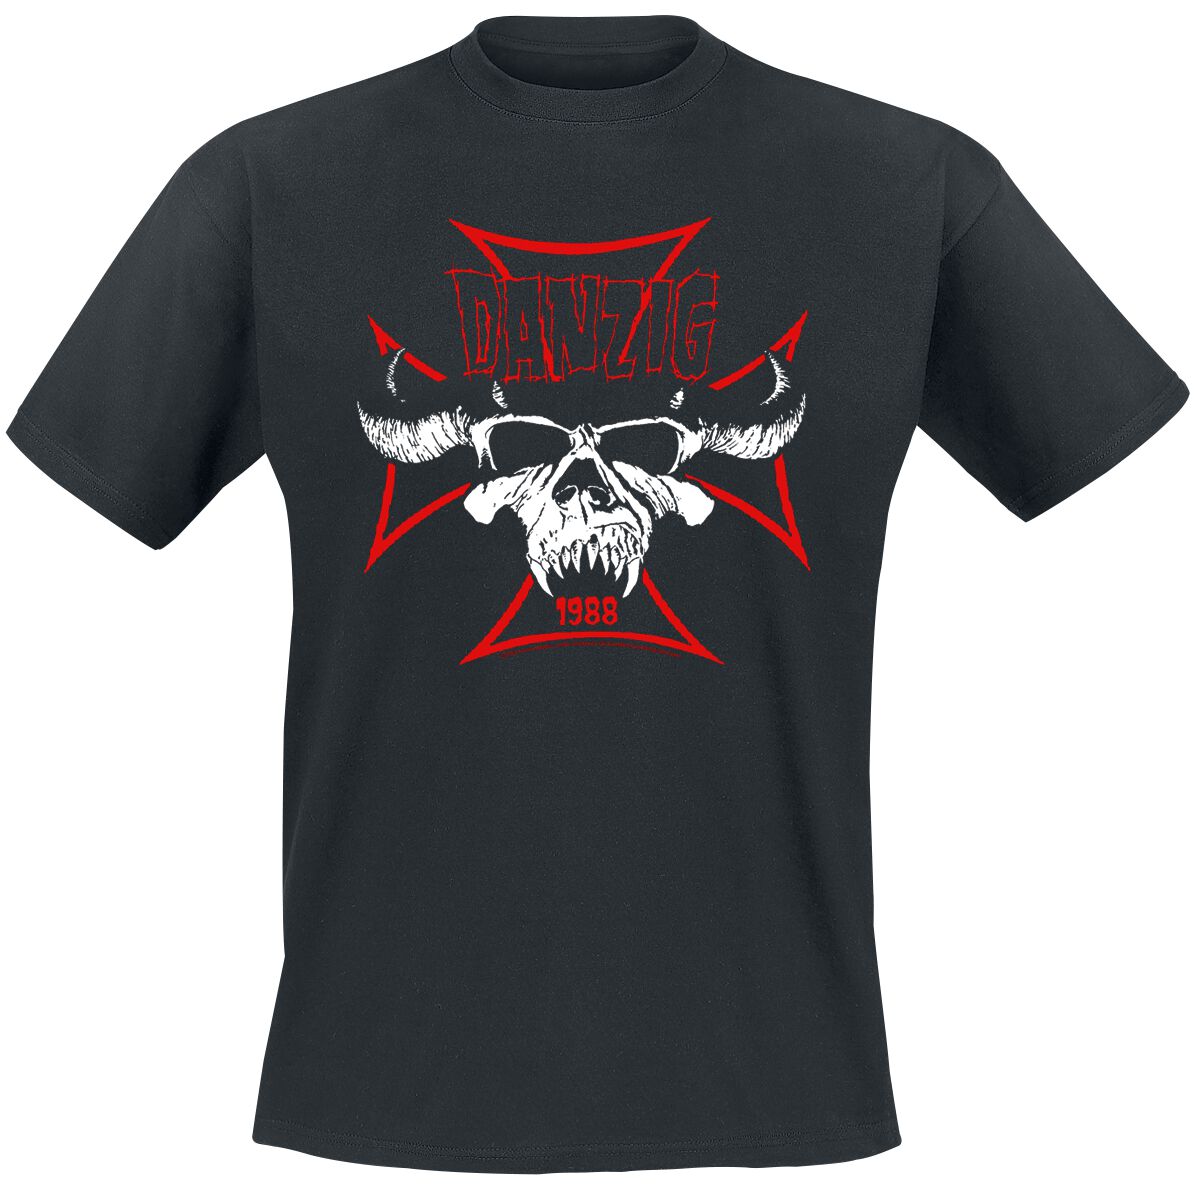 Danzig T-Shirt - Cross Skull - S bis 3XL - für Männer - Größe XXL - schwarz  - Lizenziertes Merchandise!